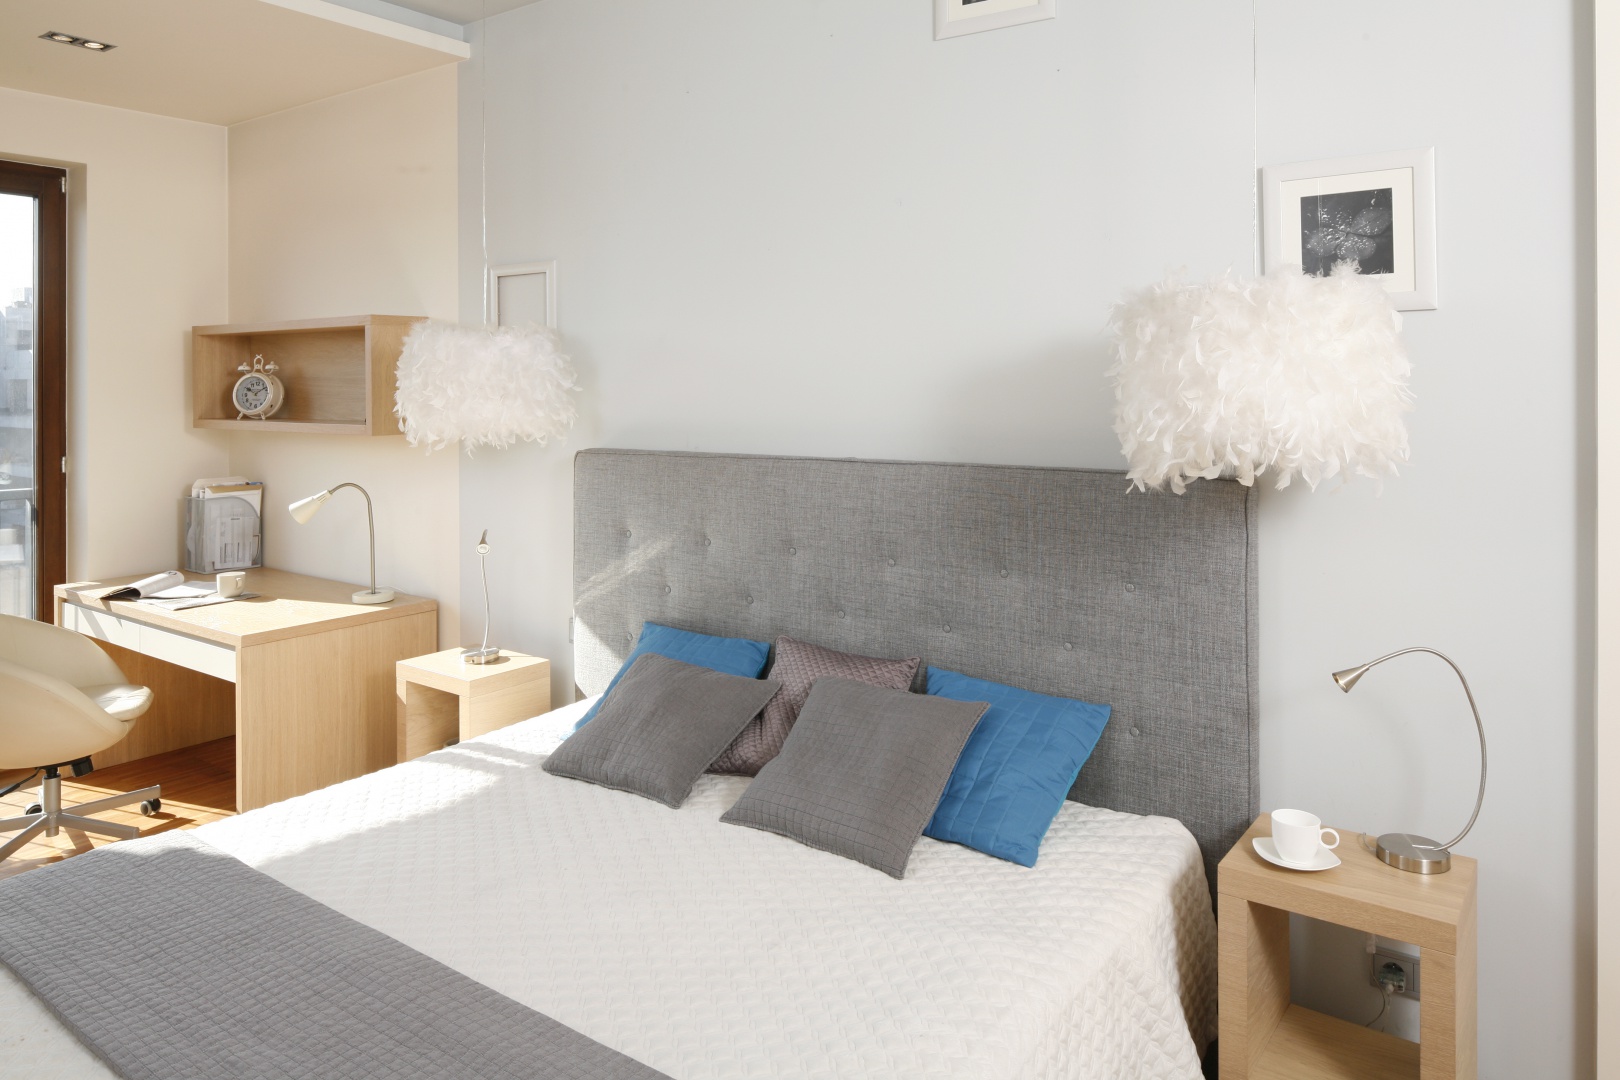 Sypialnię w bieli i szarościach ociepla dodatek drewna aranżacji, czyniąc wnętrze przytulnym. Projekt: Marta Kruk. Fot. Bartosz Jarosz 